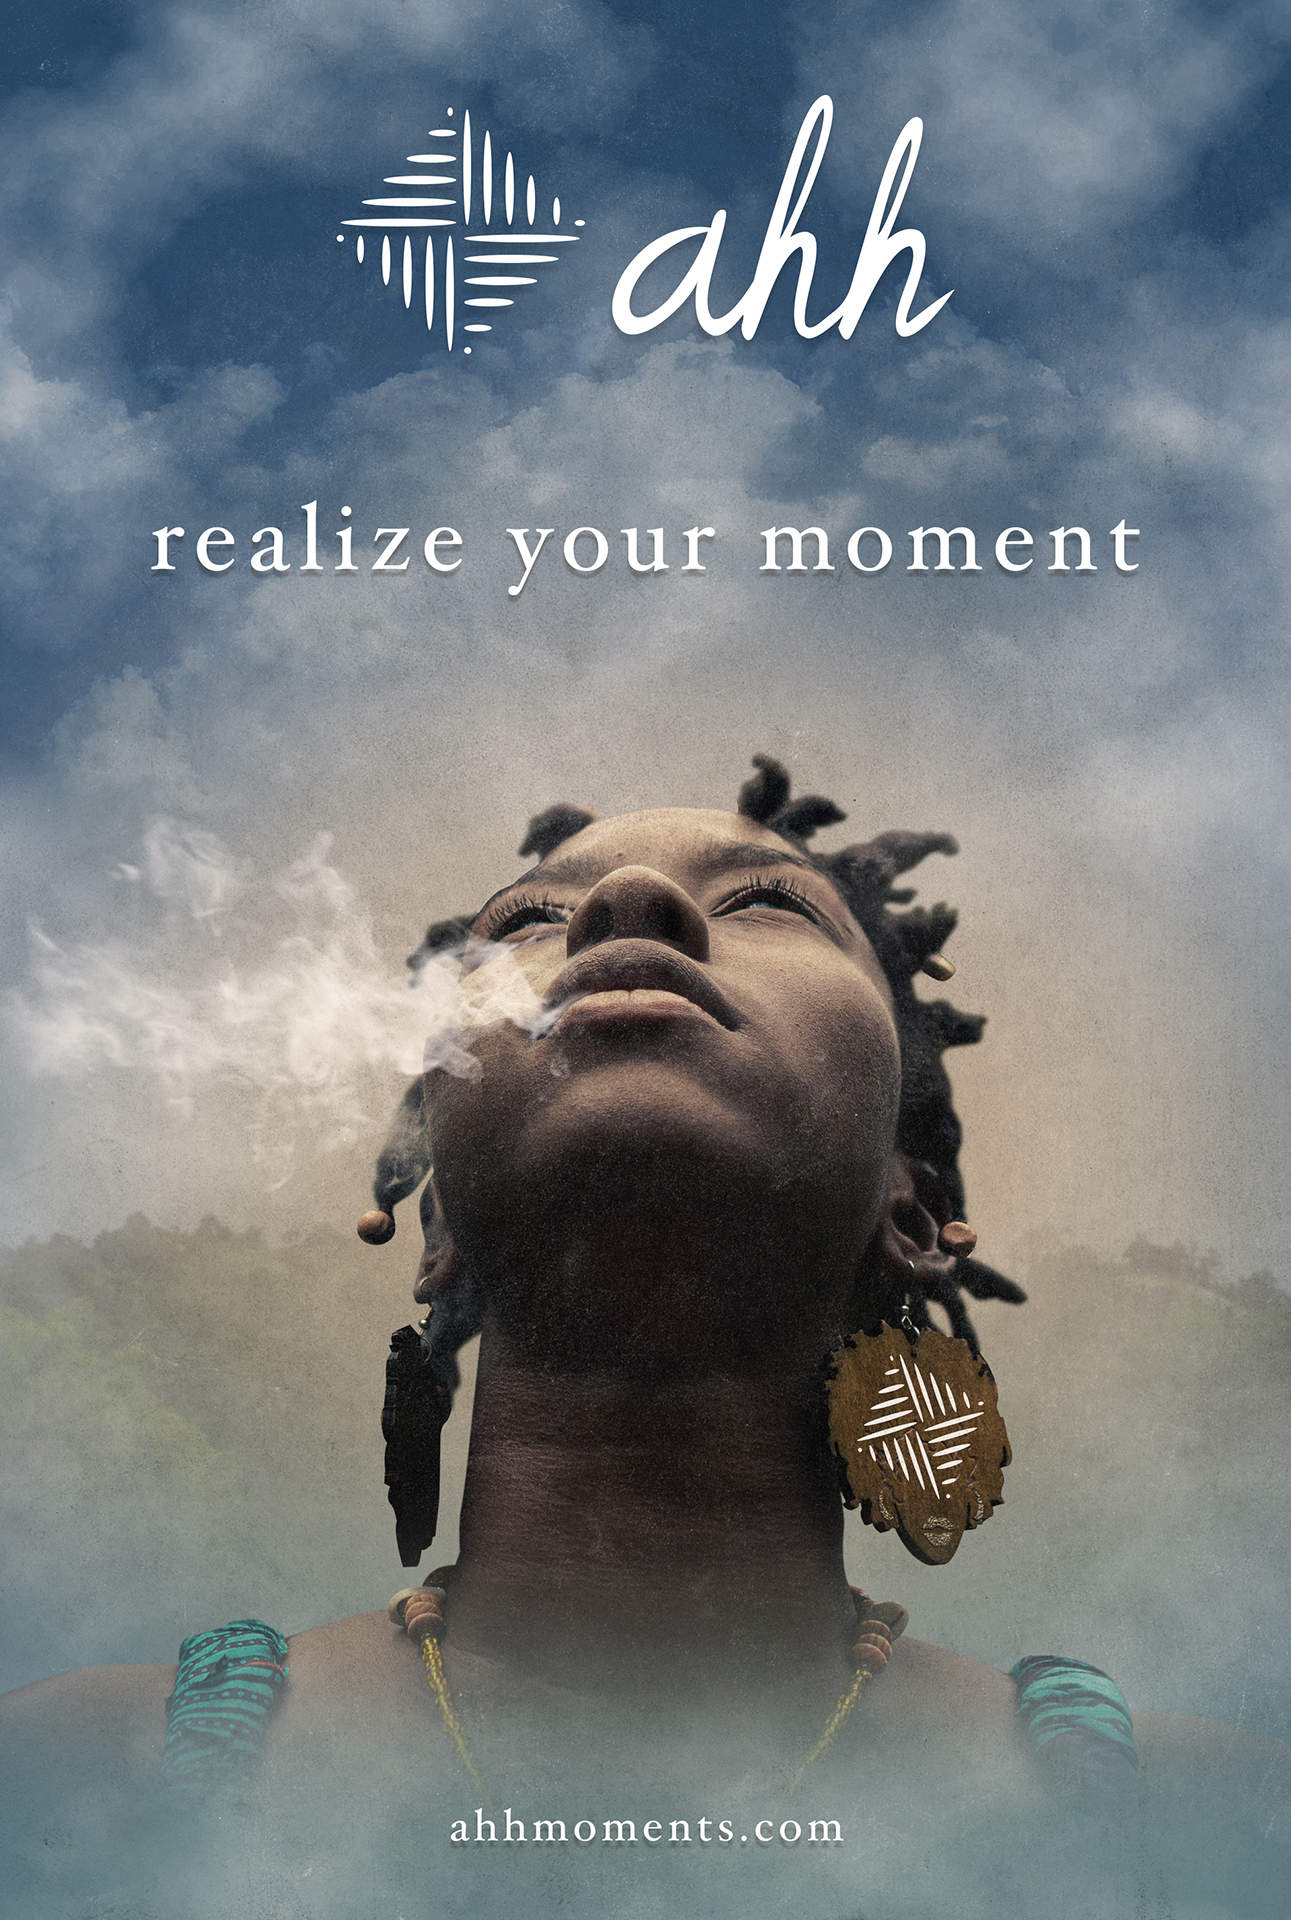 Poster et visuels réseaux sociaux pour Ahh - Realize your moment. Réalisé par Loseou